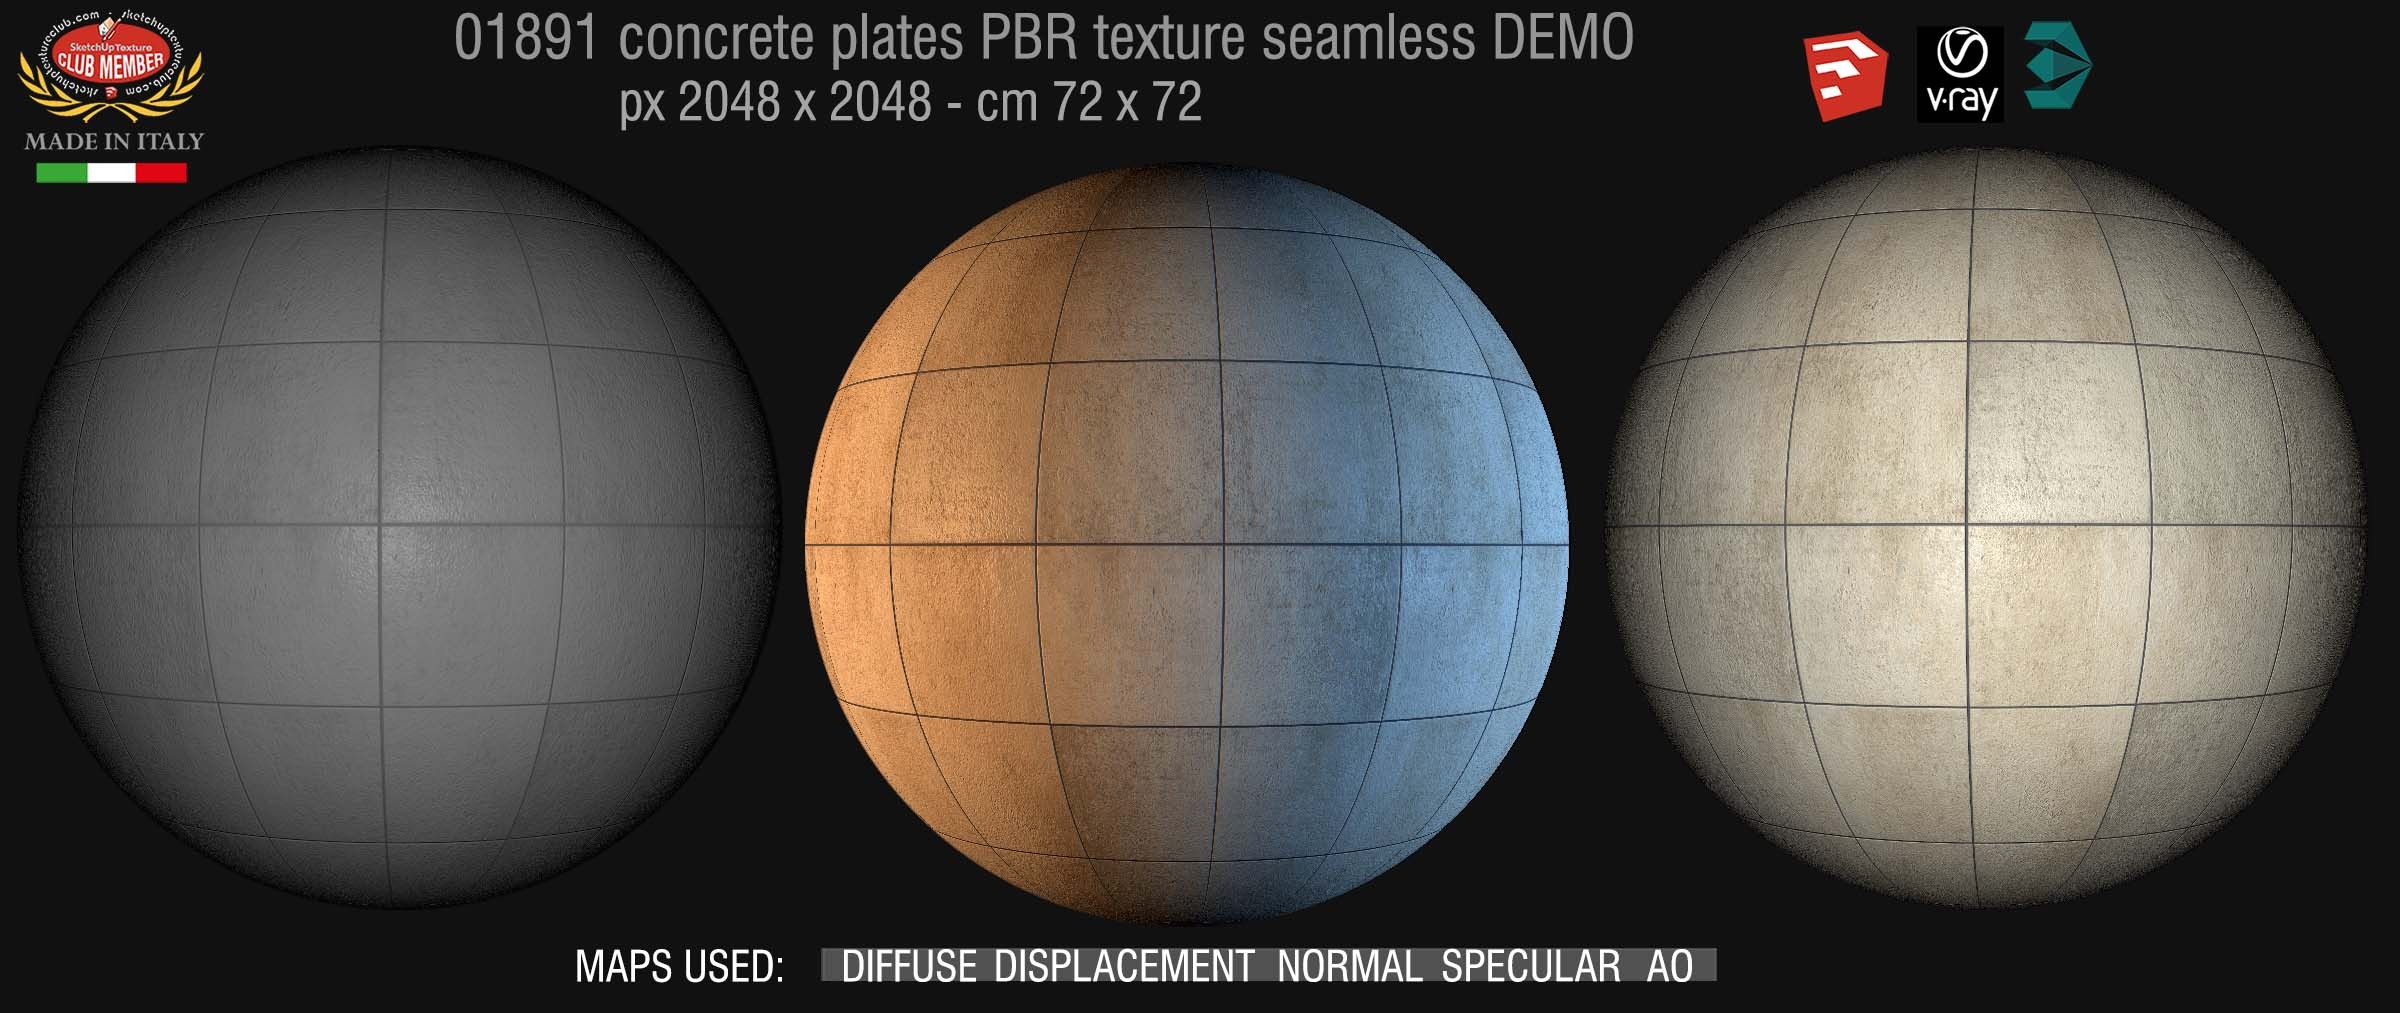 01891 tadao ando concrete plates PBR texture seamless DEMO